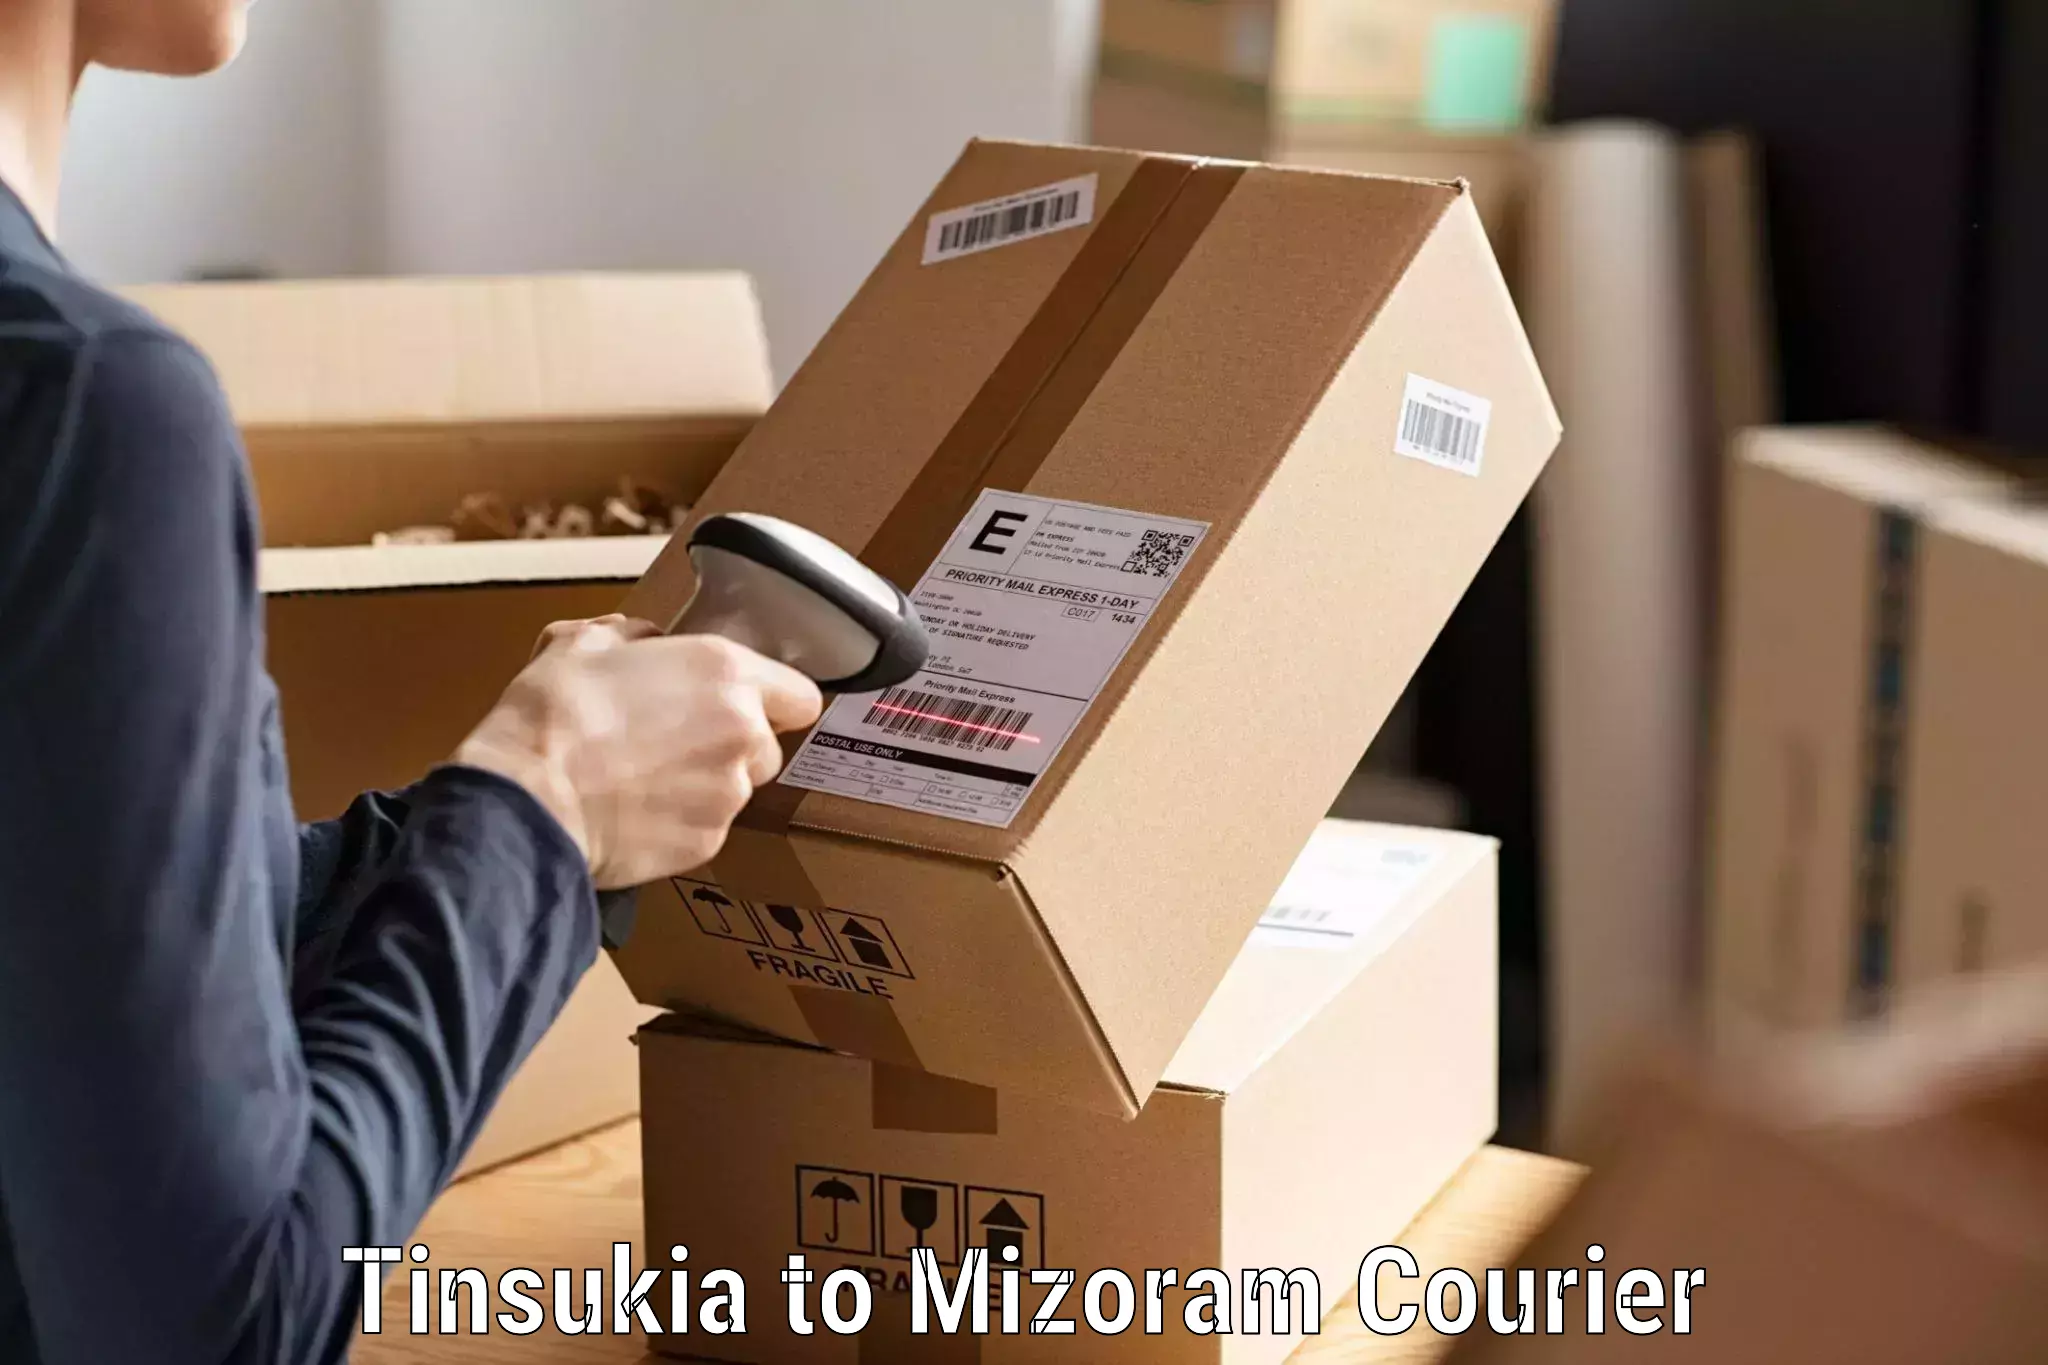 Express delivery network Tinsukia to Serchhip